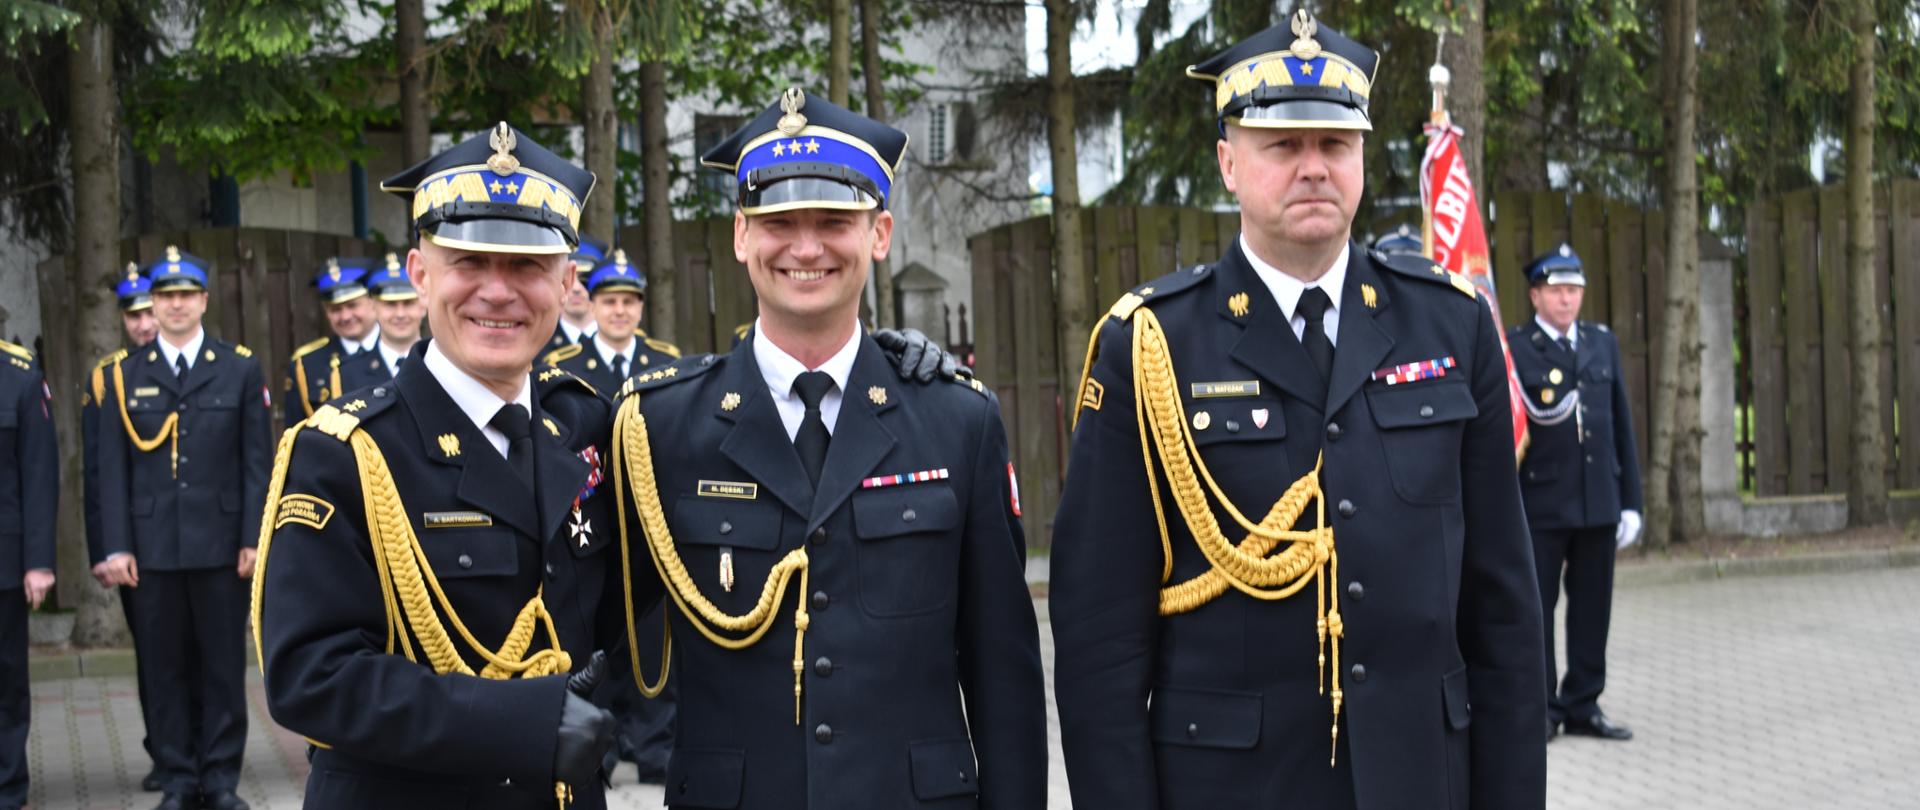 Zdjęcie 3 komendantów (główny, wojewódzki i powiatowy) w mundurach galowych